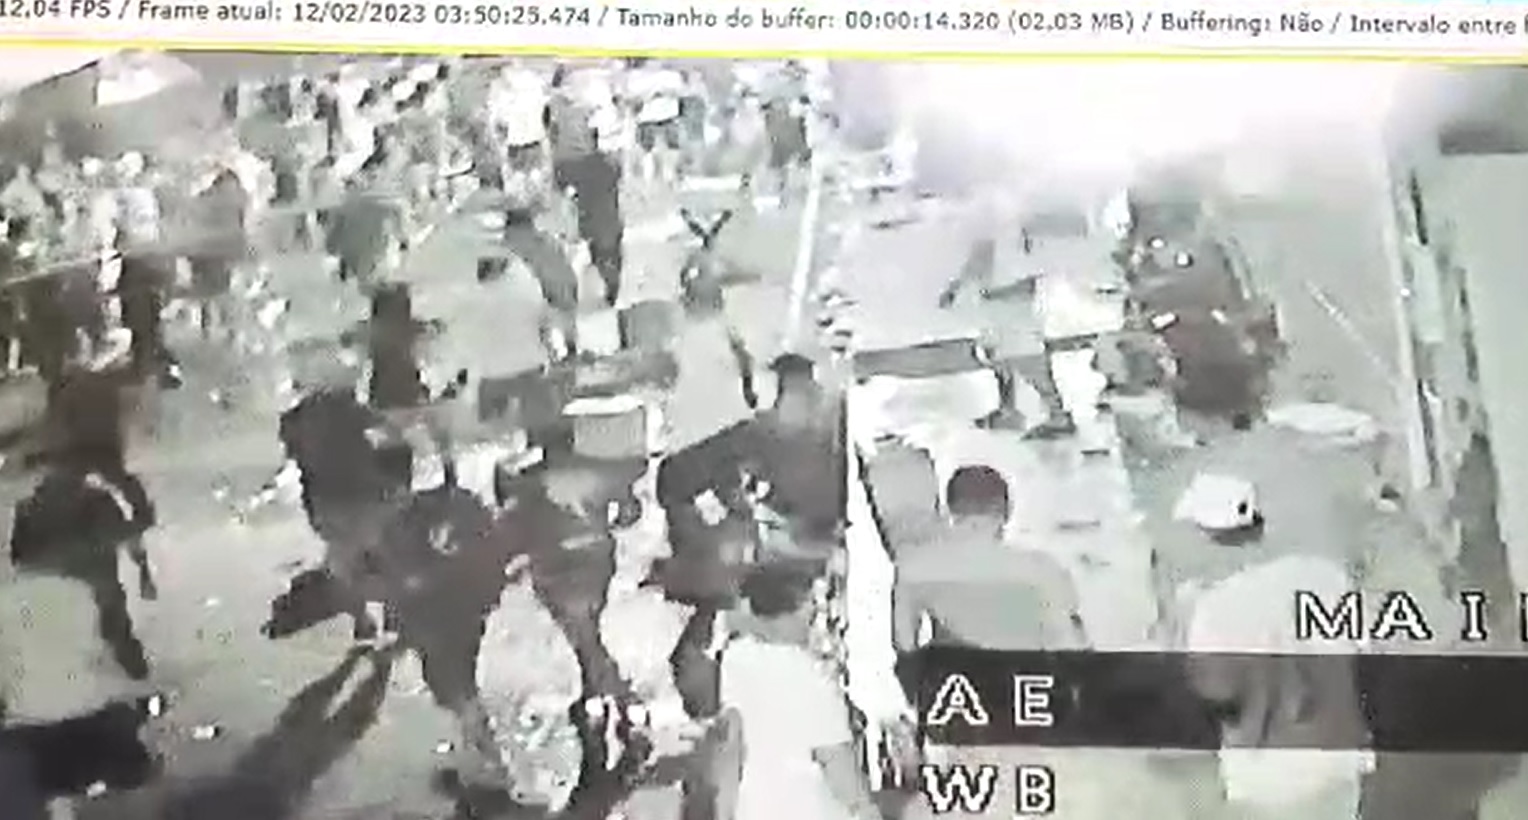 Duplo assassinato no Carnaval de Coari foi registrado por câmeras de segurança - Foto: Reprodução/WhatsApp